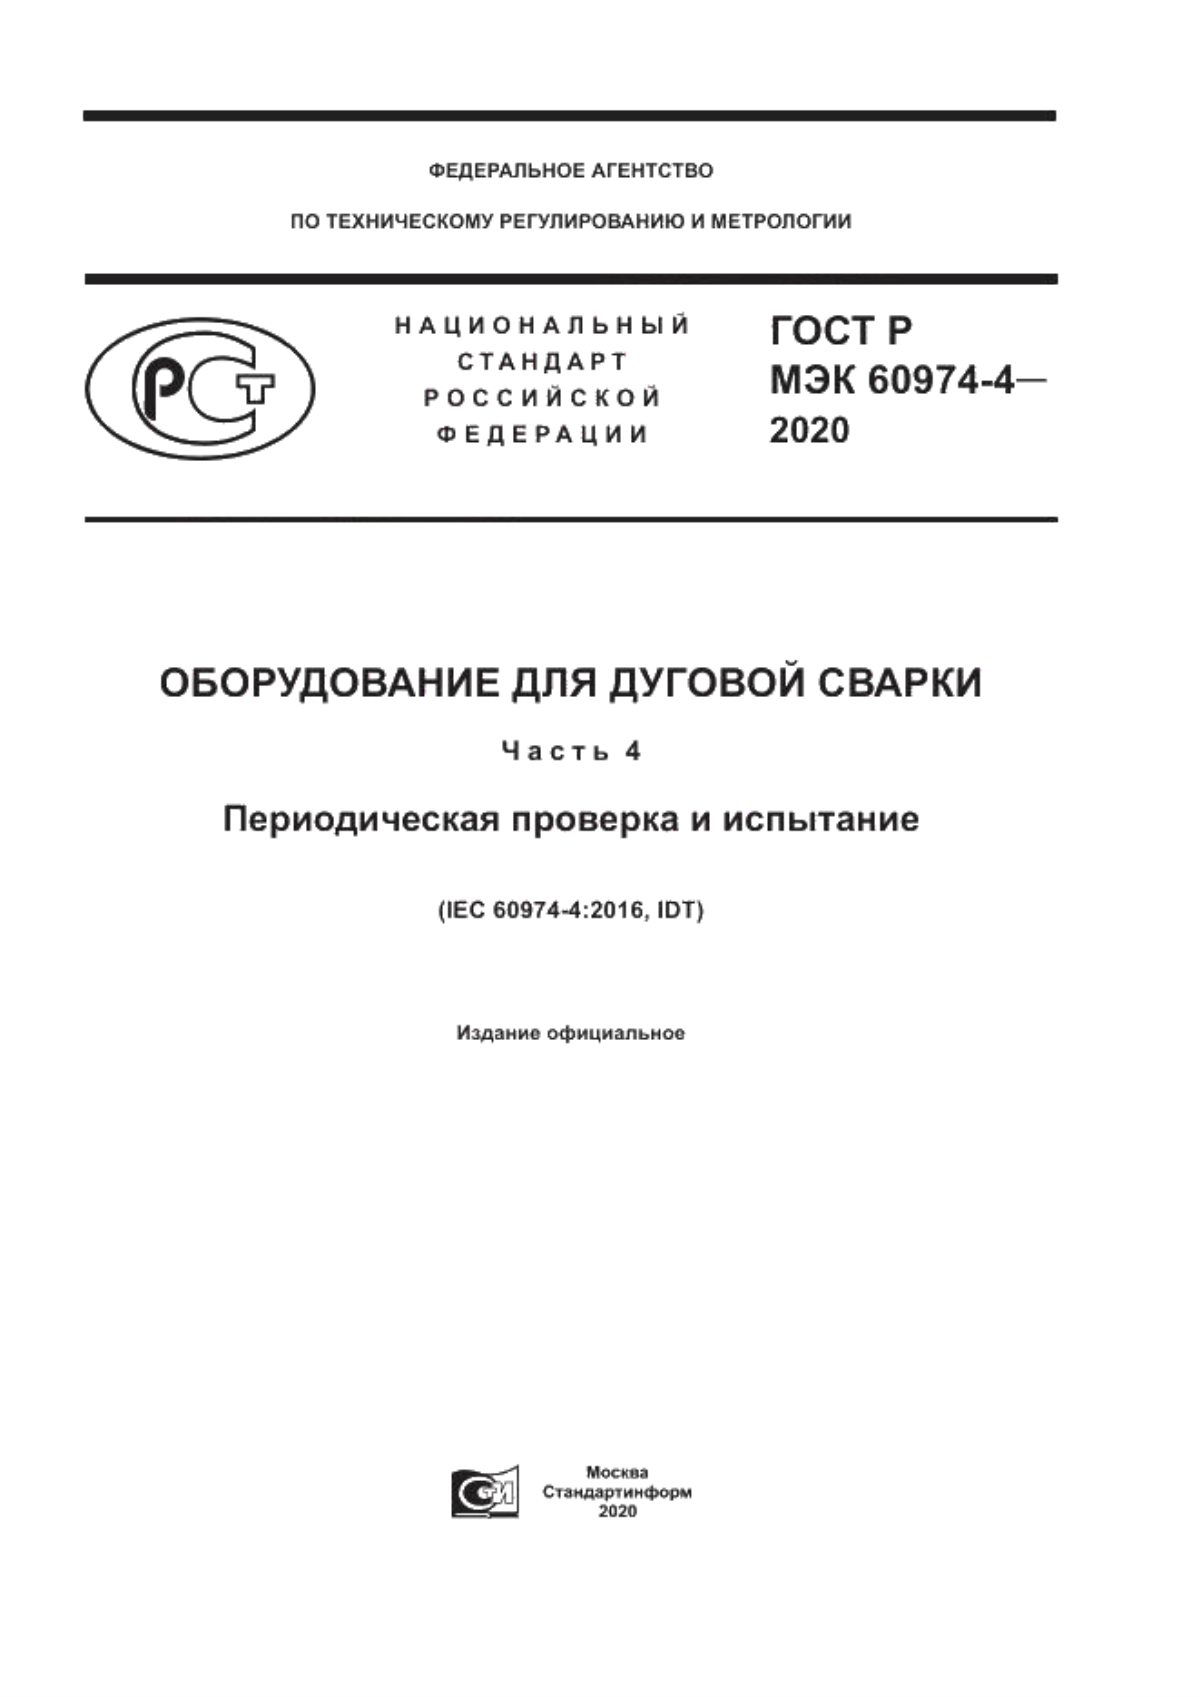 ГОСТ Р МЭК 60974-4-2020 Оборудование для дуговой сварки. Часть 4. Периодическая проверка и испытание